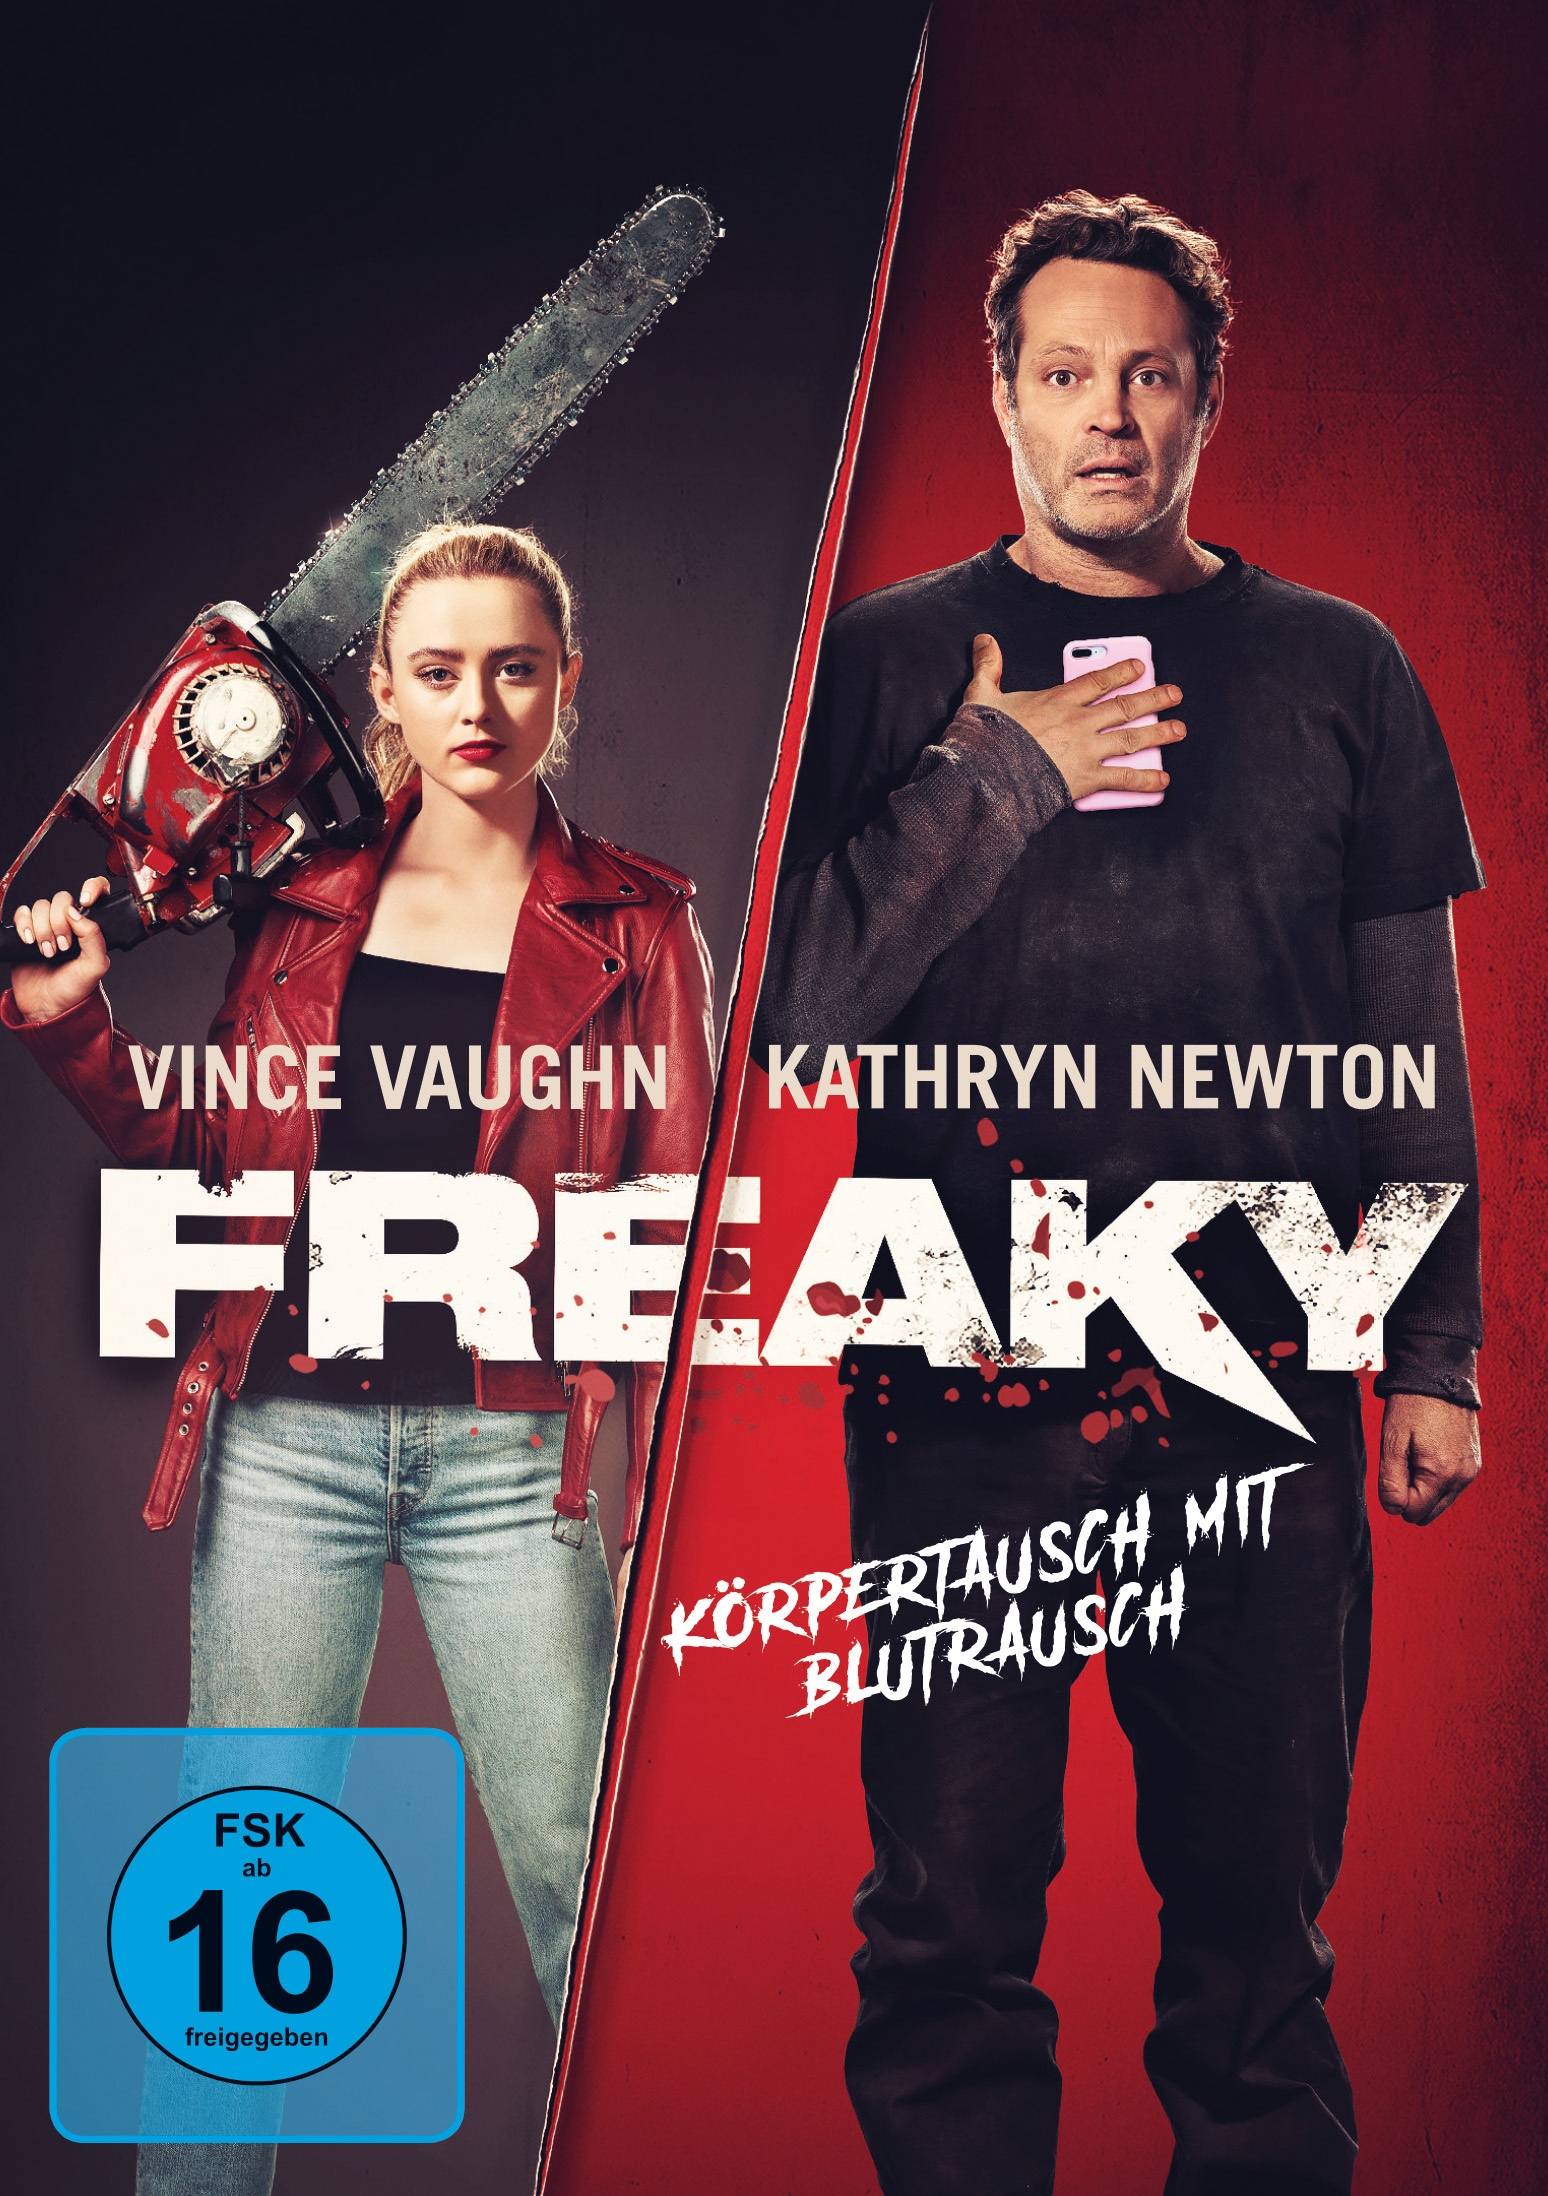 Freaky (DVD)